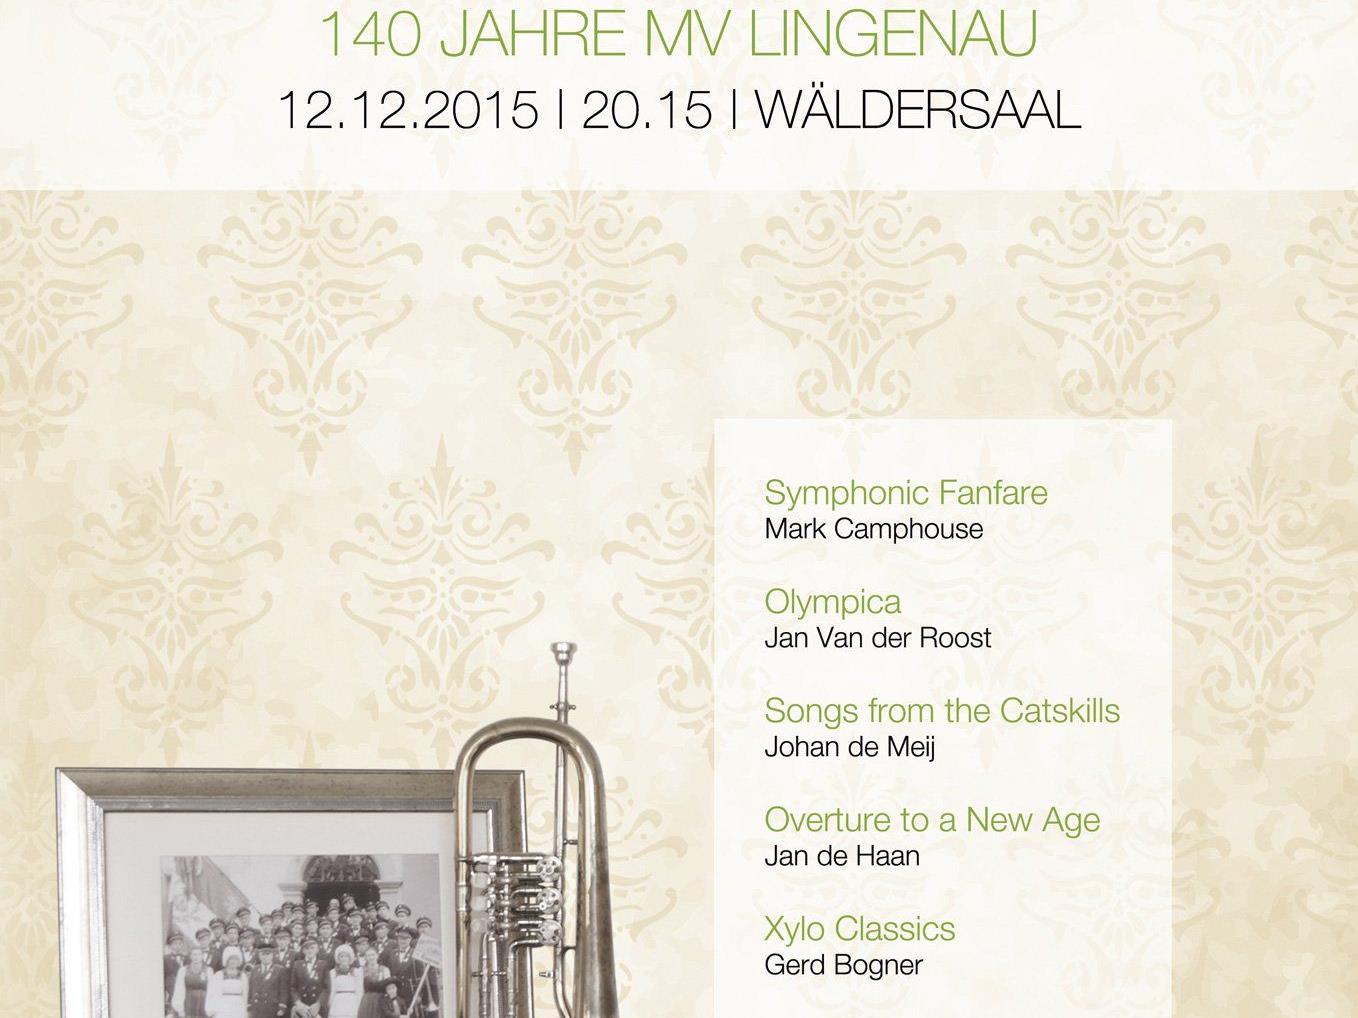 Jubiläumskonzert – 140 Jahre MV Lingenau am 12.12.2015 um 20:15 Uhr im Wäldersaal Lingenau